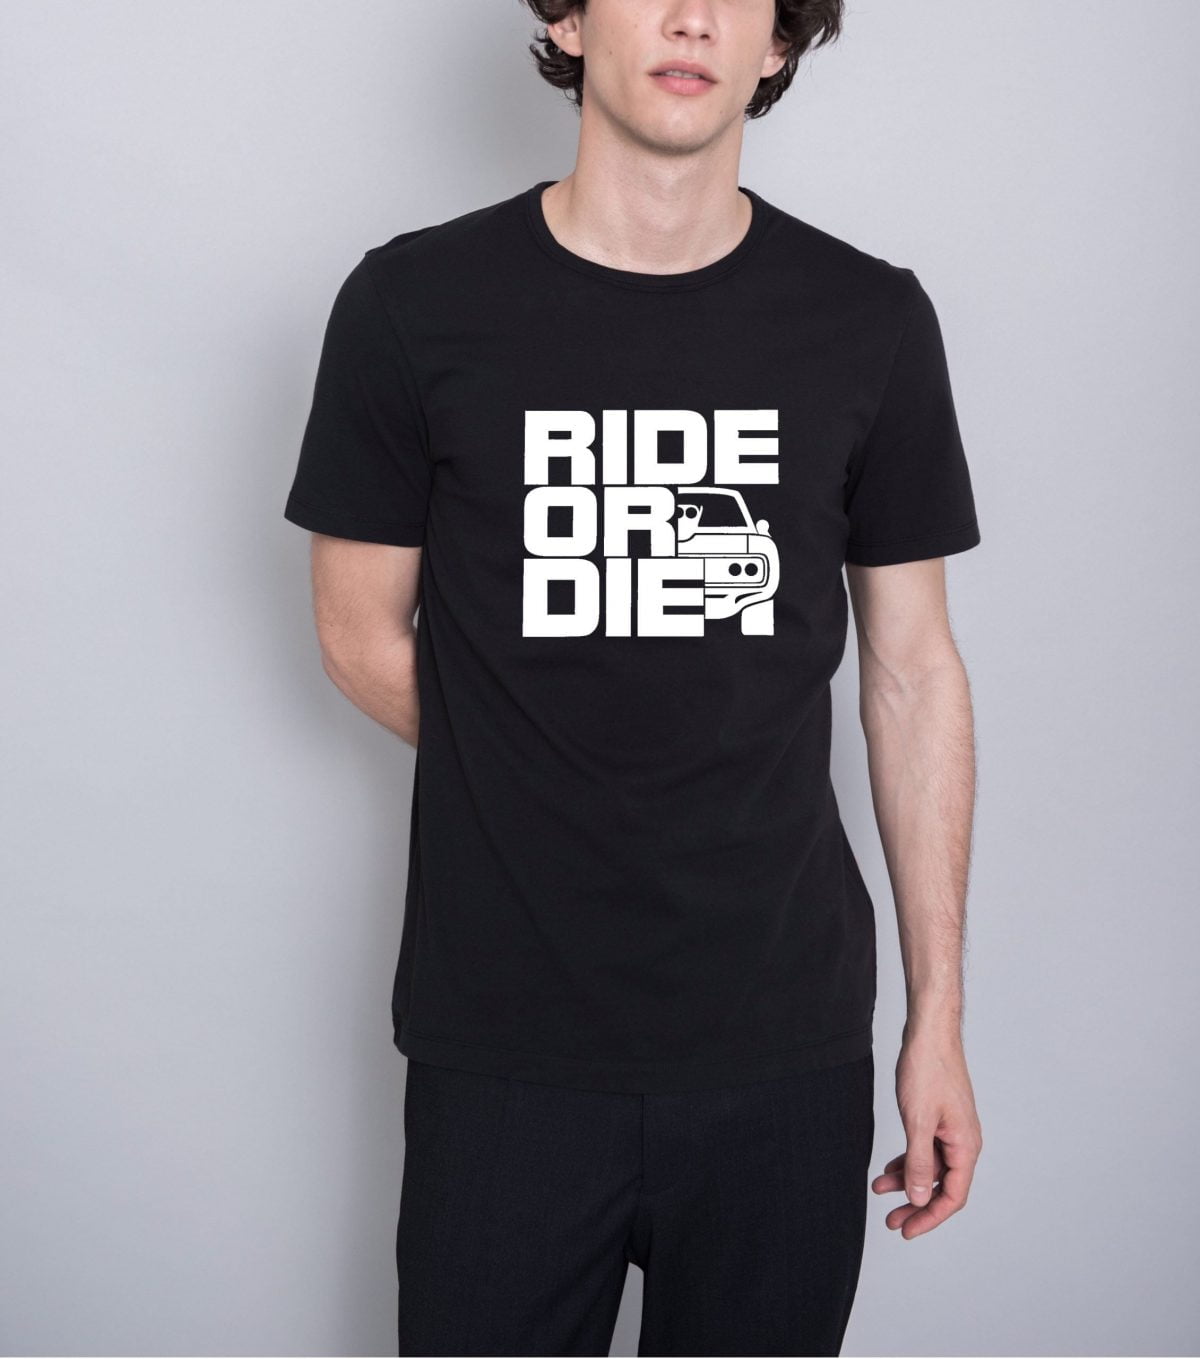 Ride or die tshirt